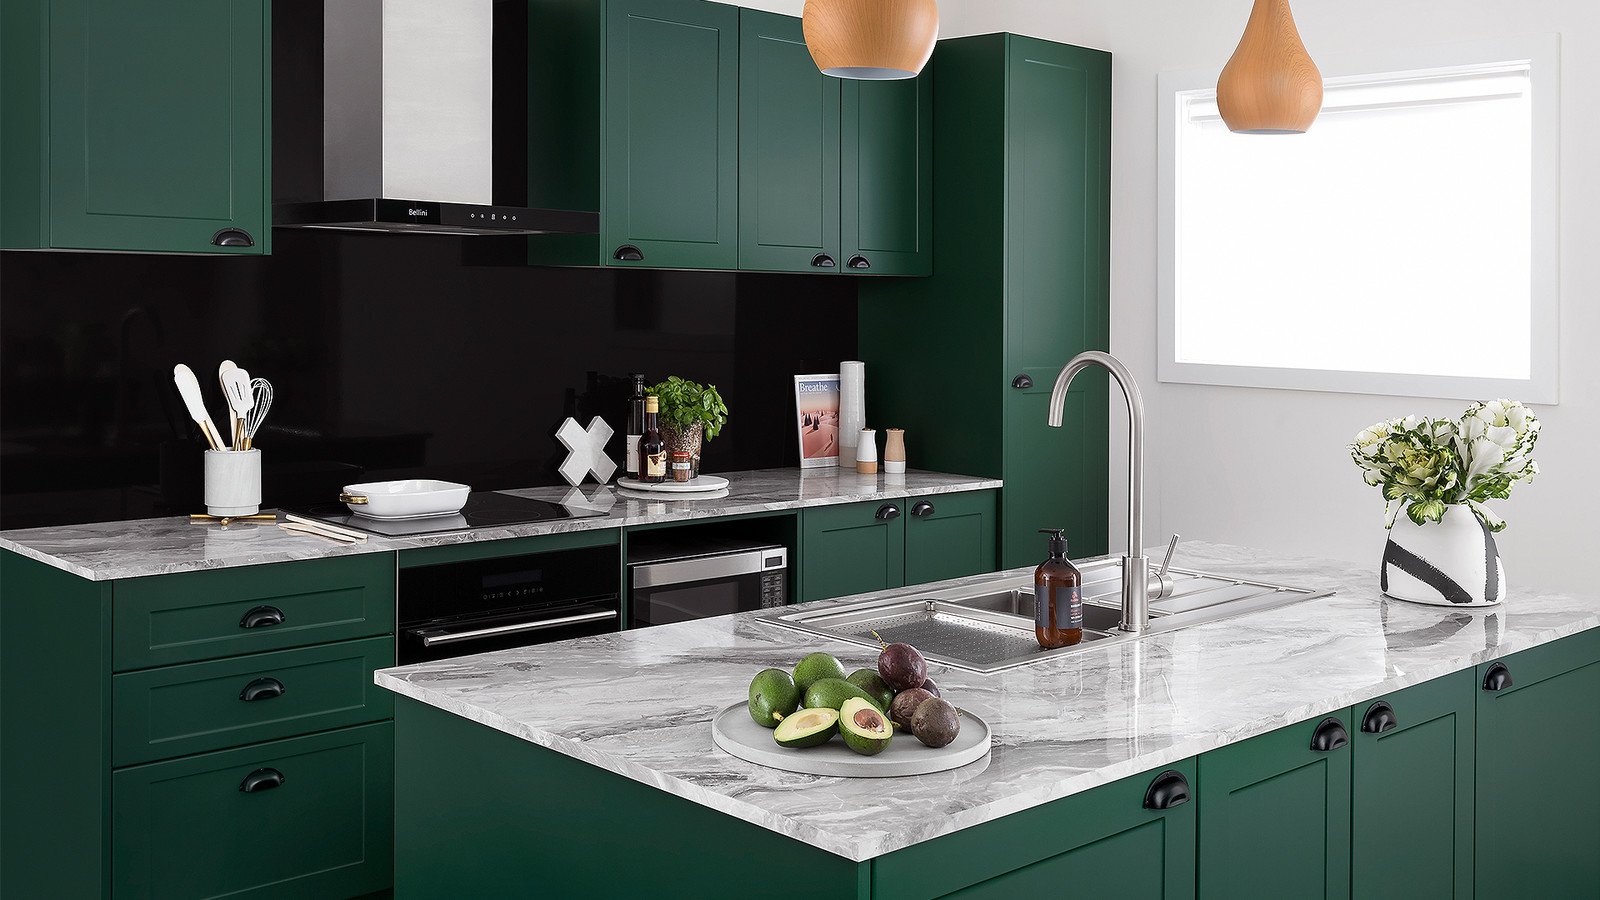 Почему зелёный цвет идеально подходит для оформления кухни?